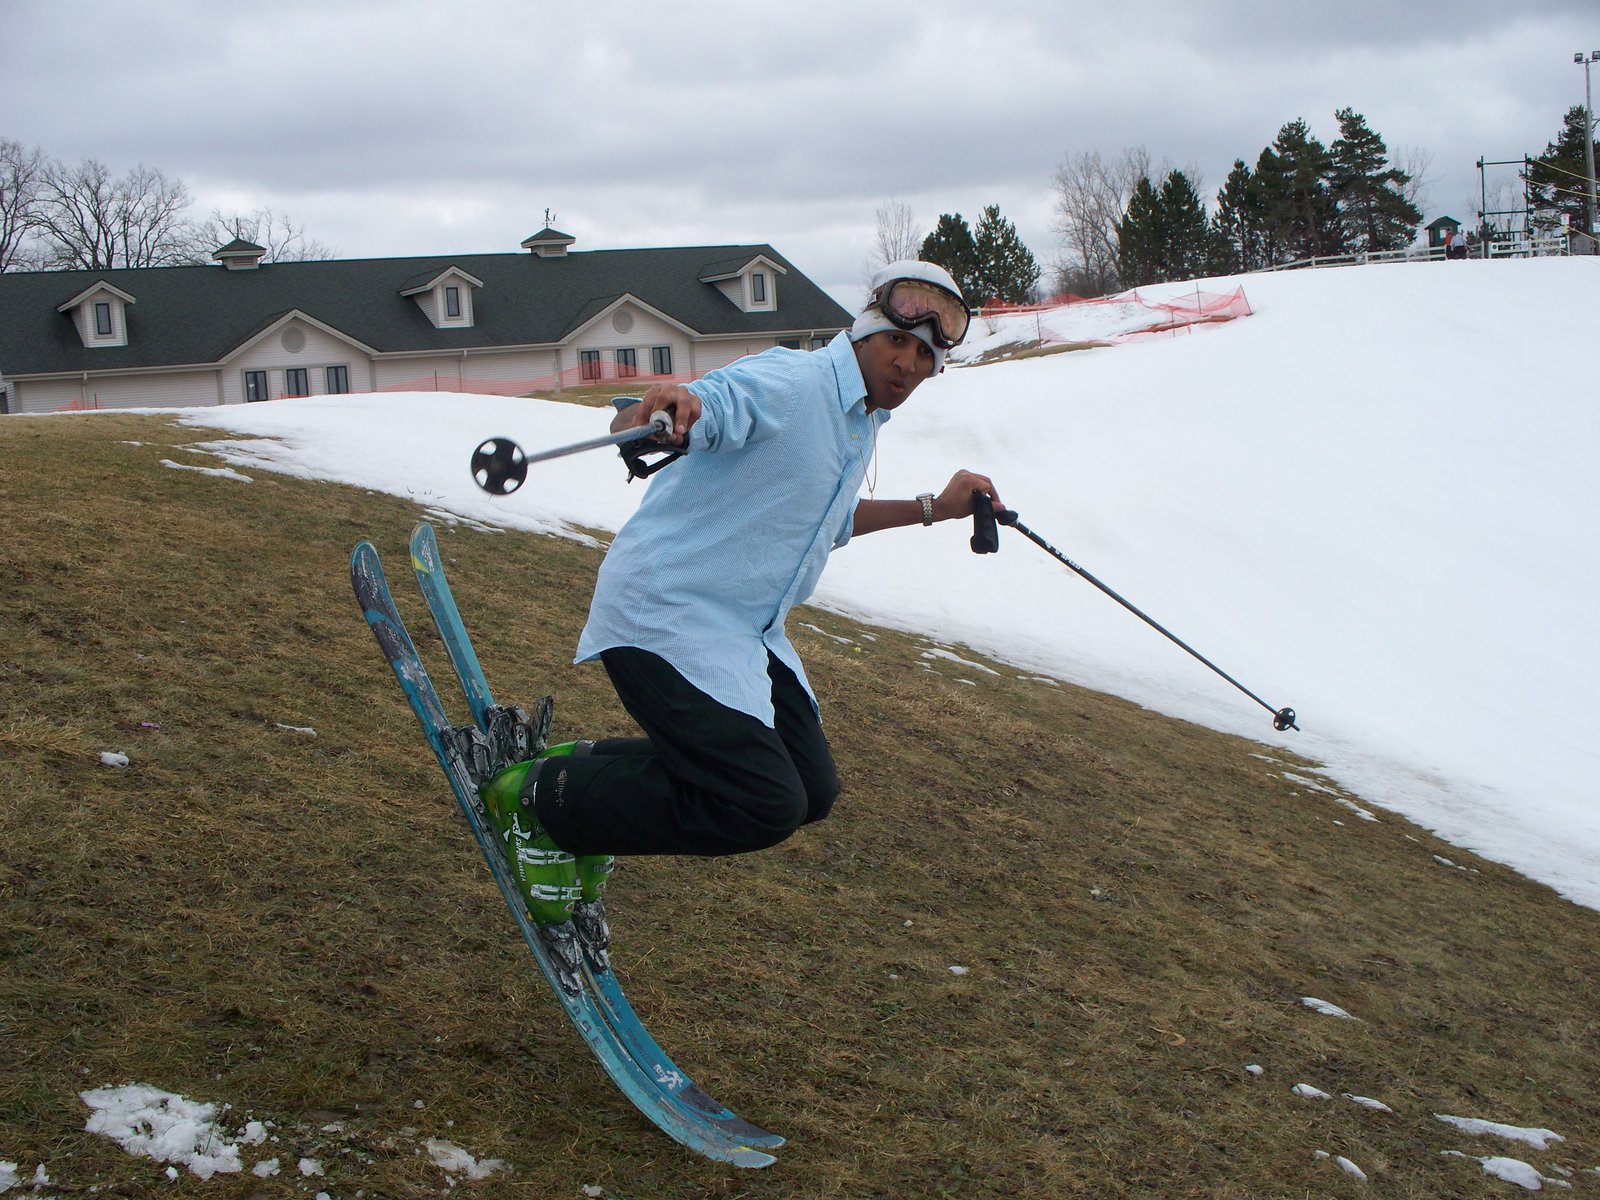 Kumar on Skis